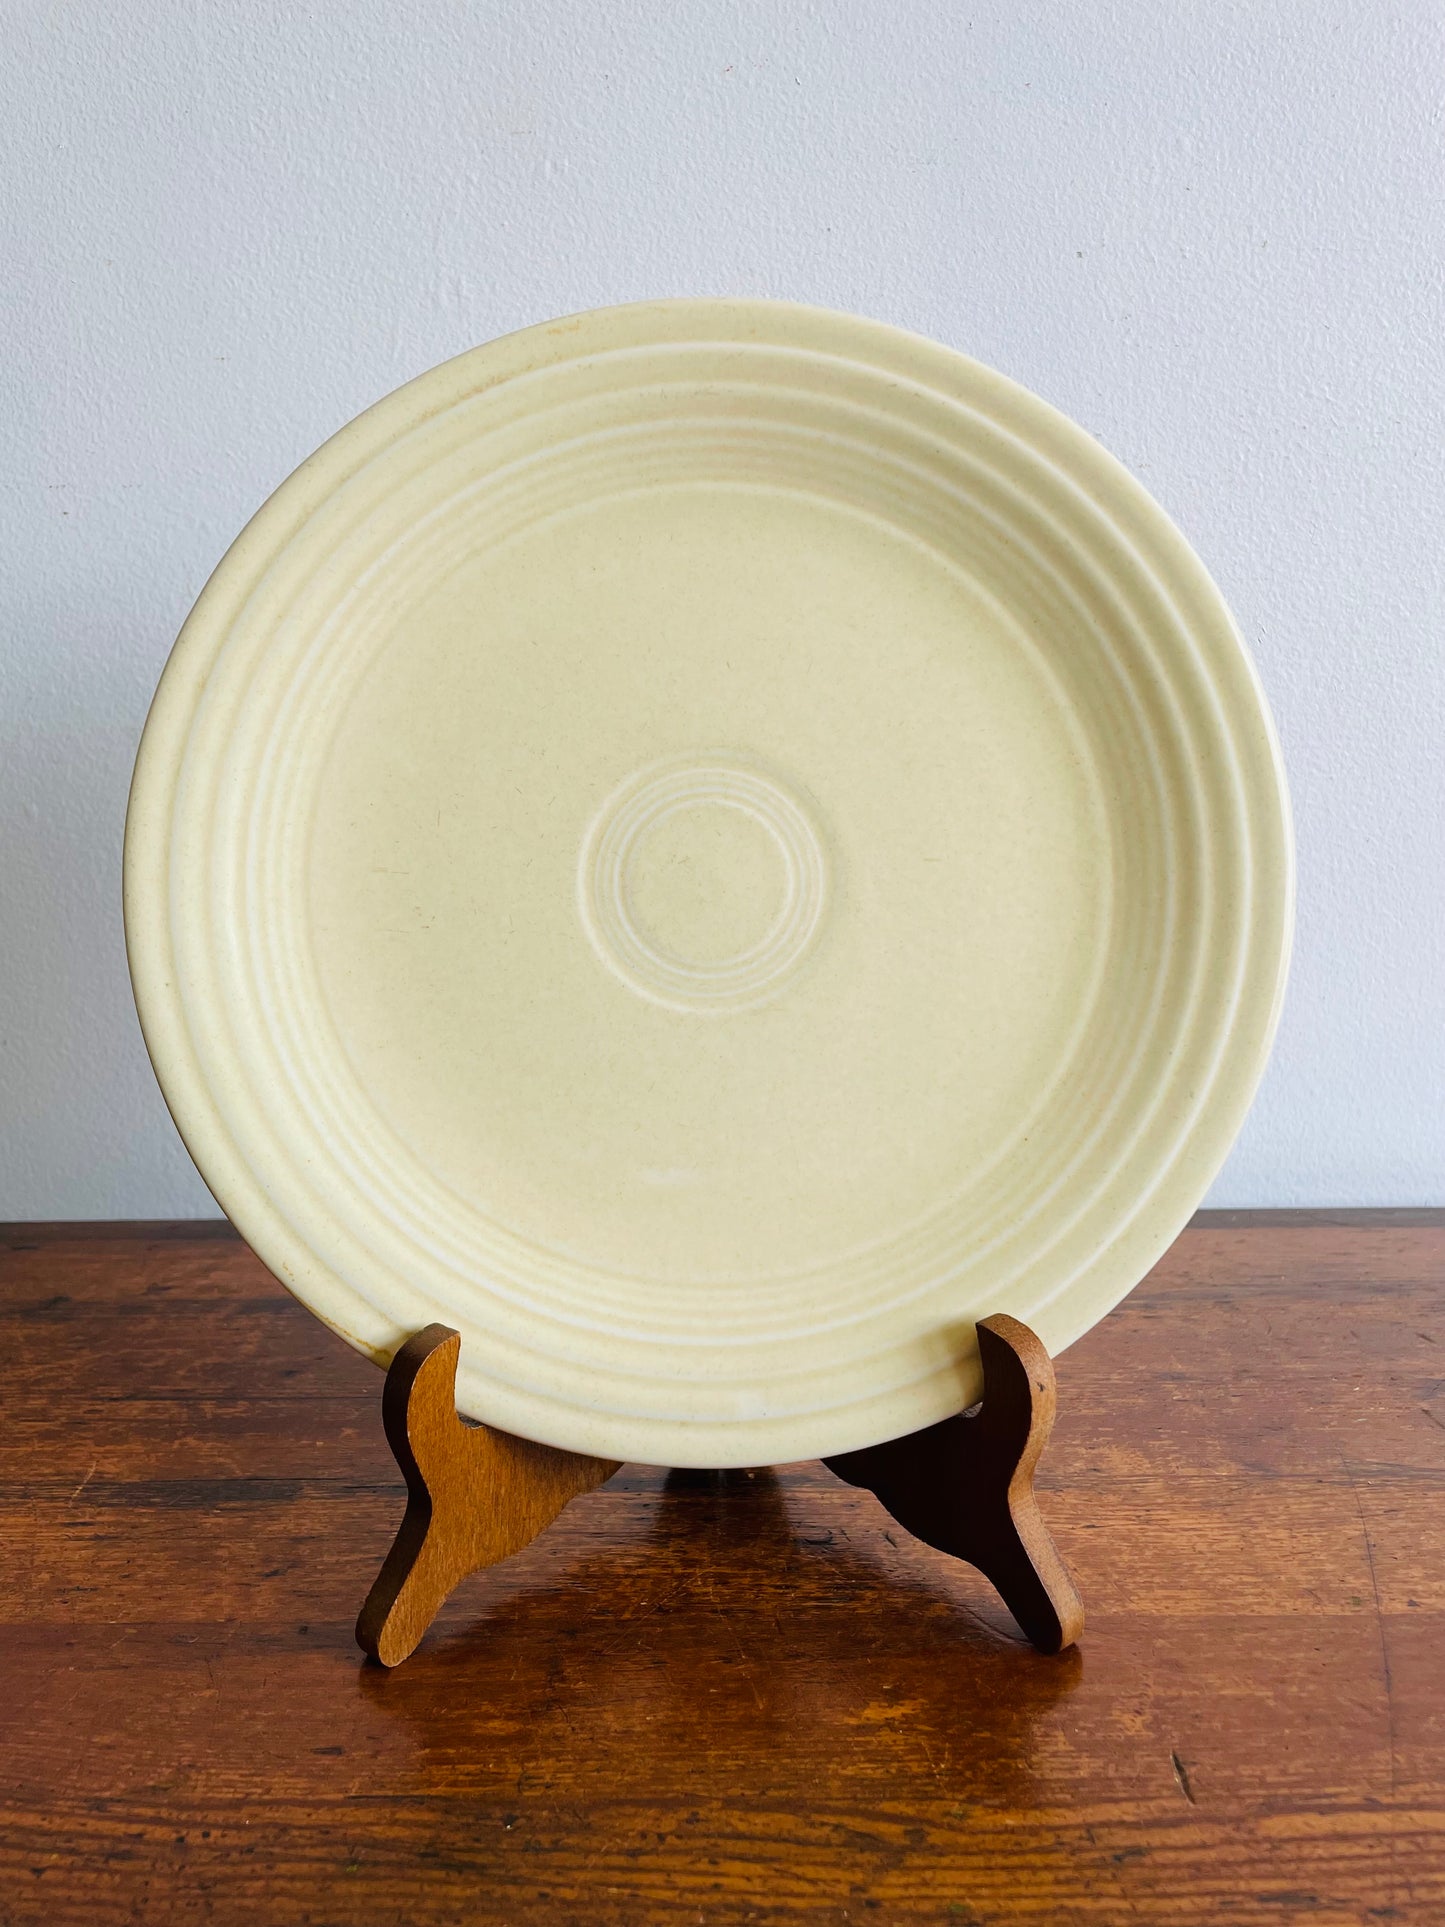 Genuine Fiesta Old Ivory 9.25" Dinner Plate Homer Laughlin Fiestaware - Made in USA Between 1936-1951